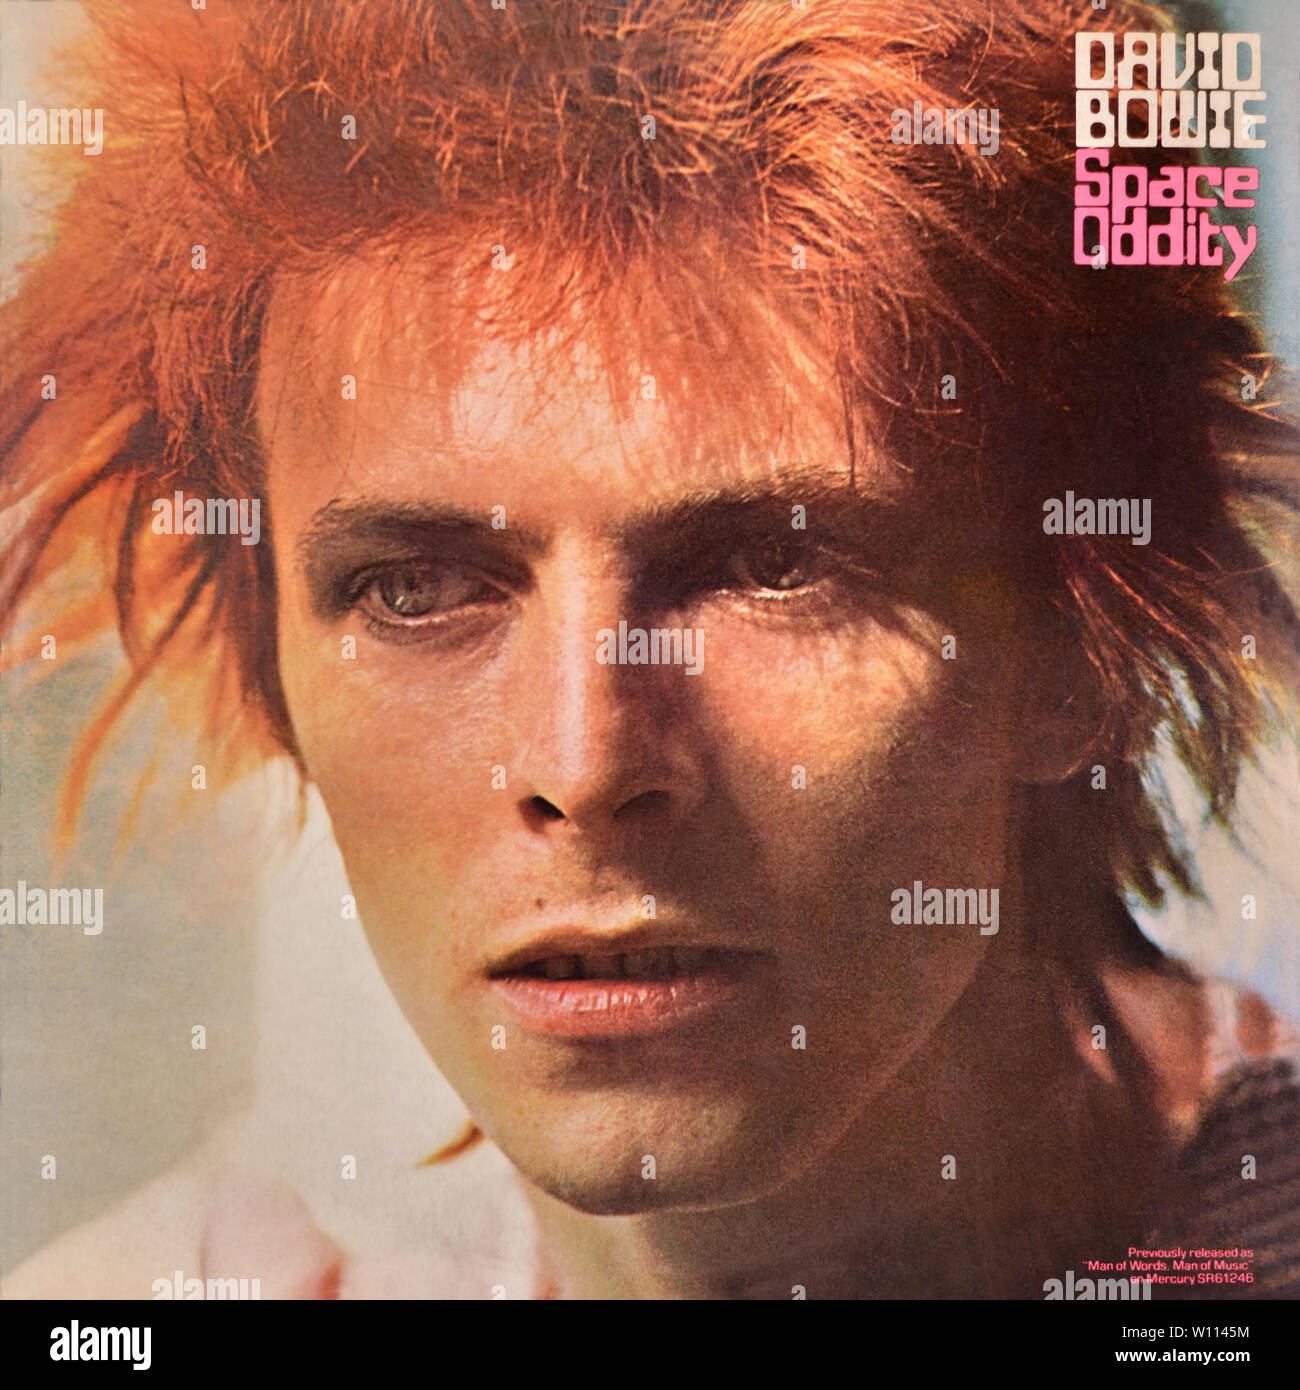 David Bowie - pochette originale de l'album en vinyle - Space Oddity - 1972 Banque D'Images